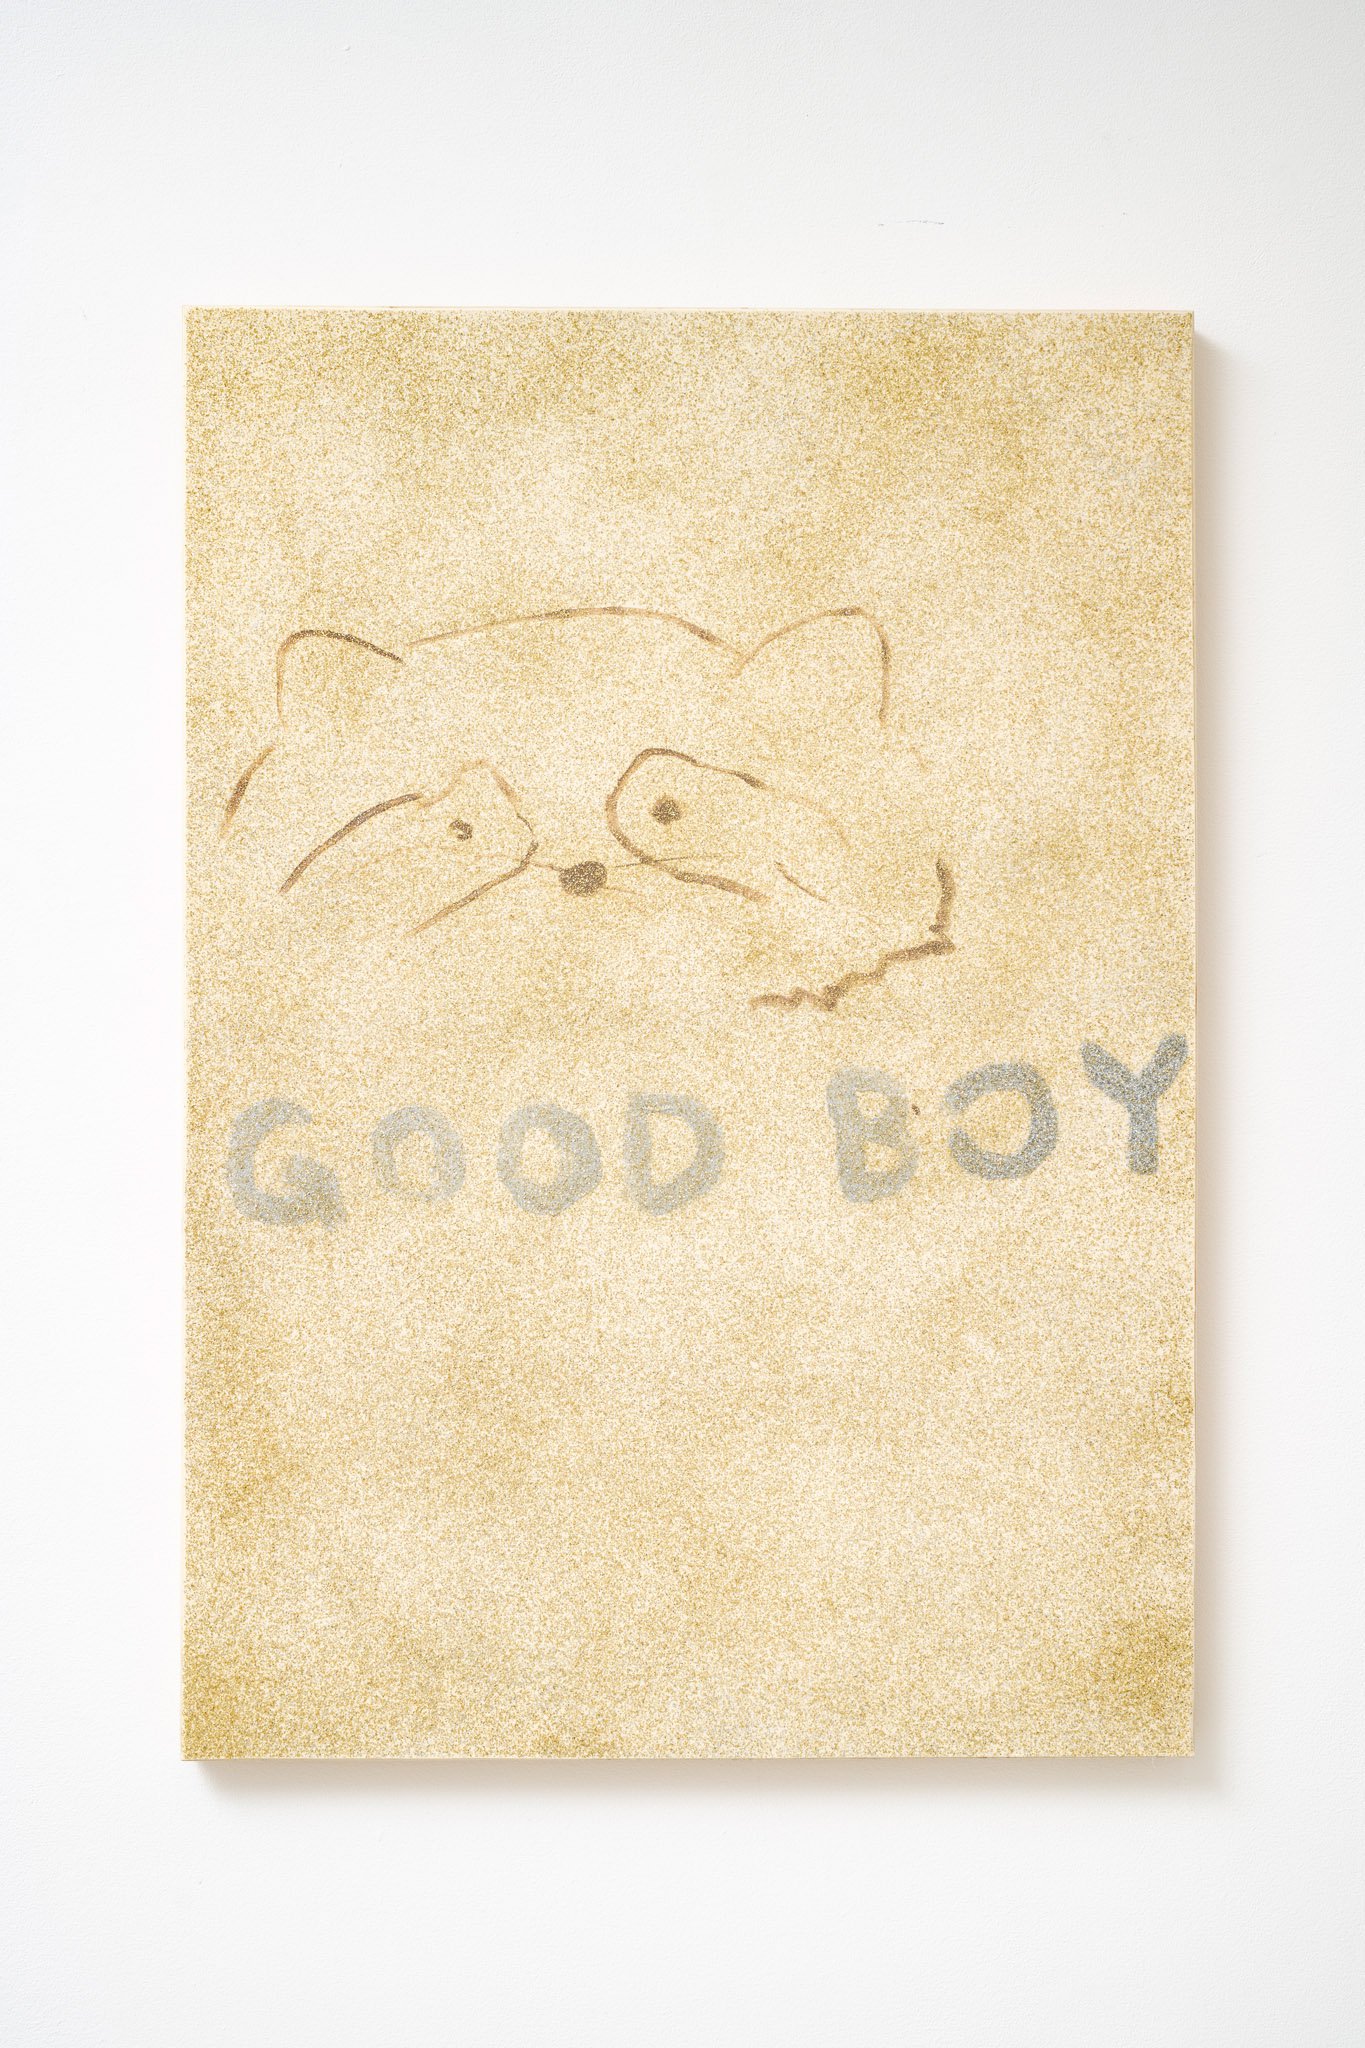 Philipp TimischlGOOD BOY (Creme, Sienna, Silver, Gold), 2019Canvas on wooden board, oil, glitter100 x 80 x 5 cm